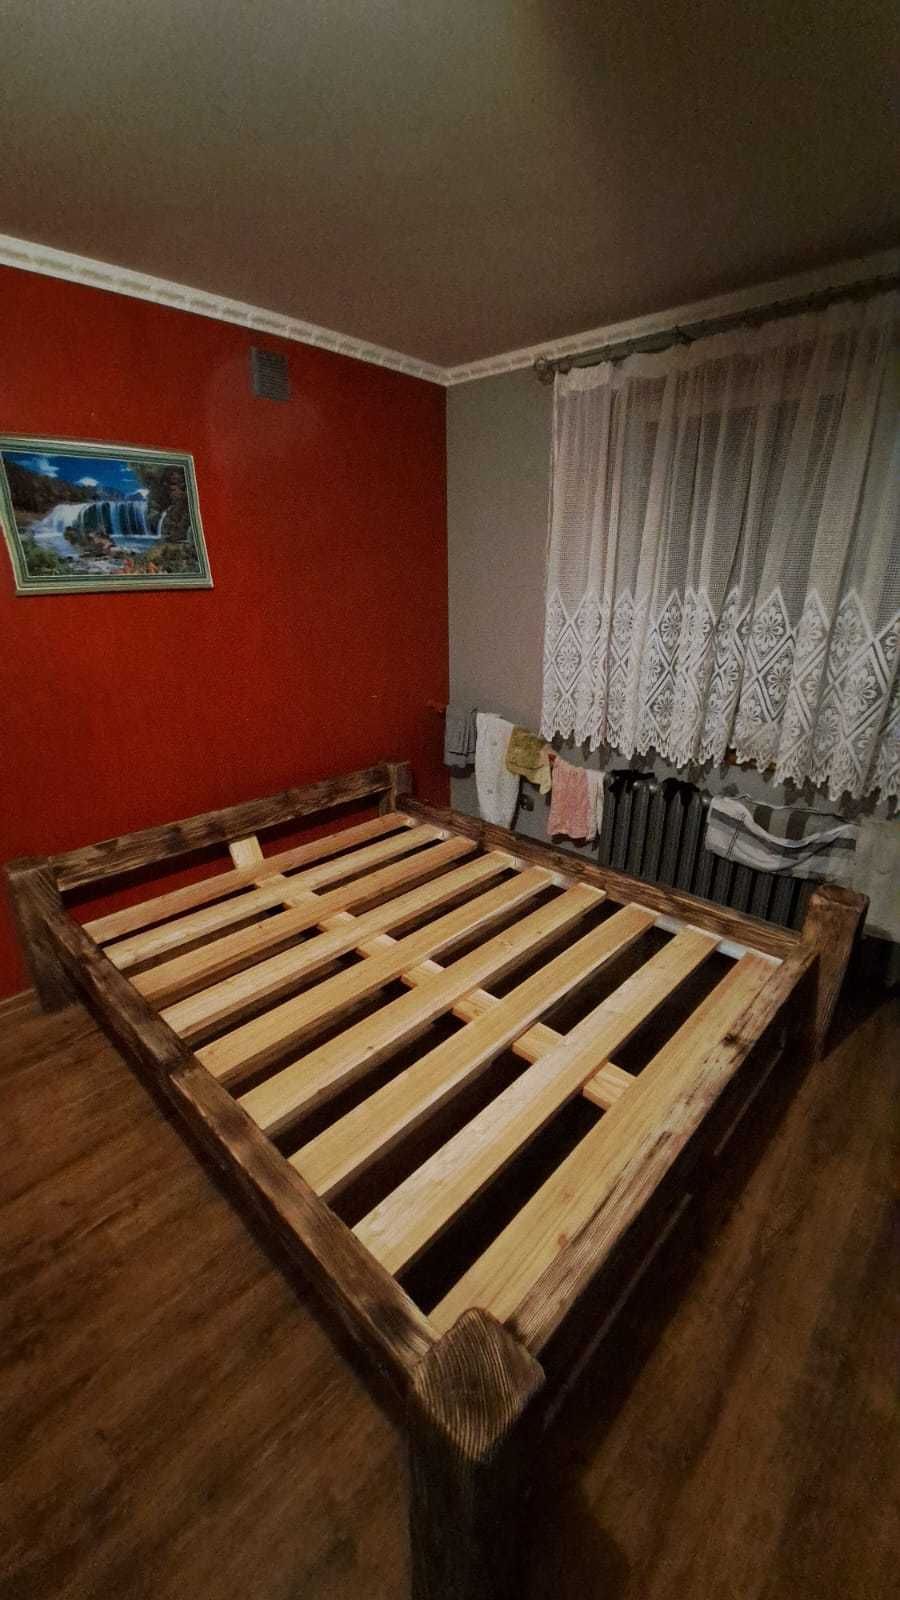 Łóżko drewniane  opalane